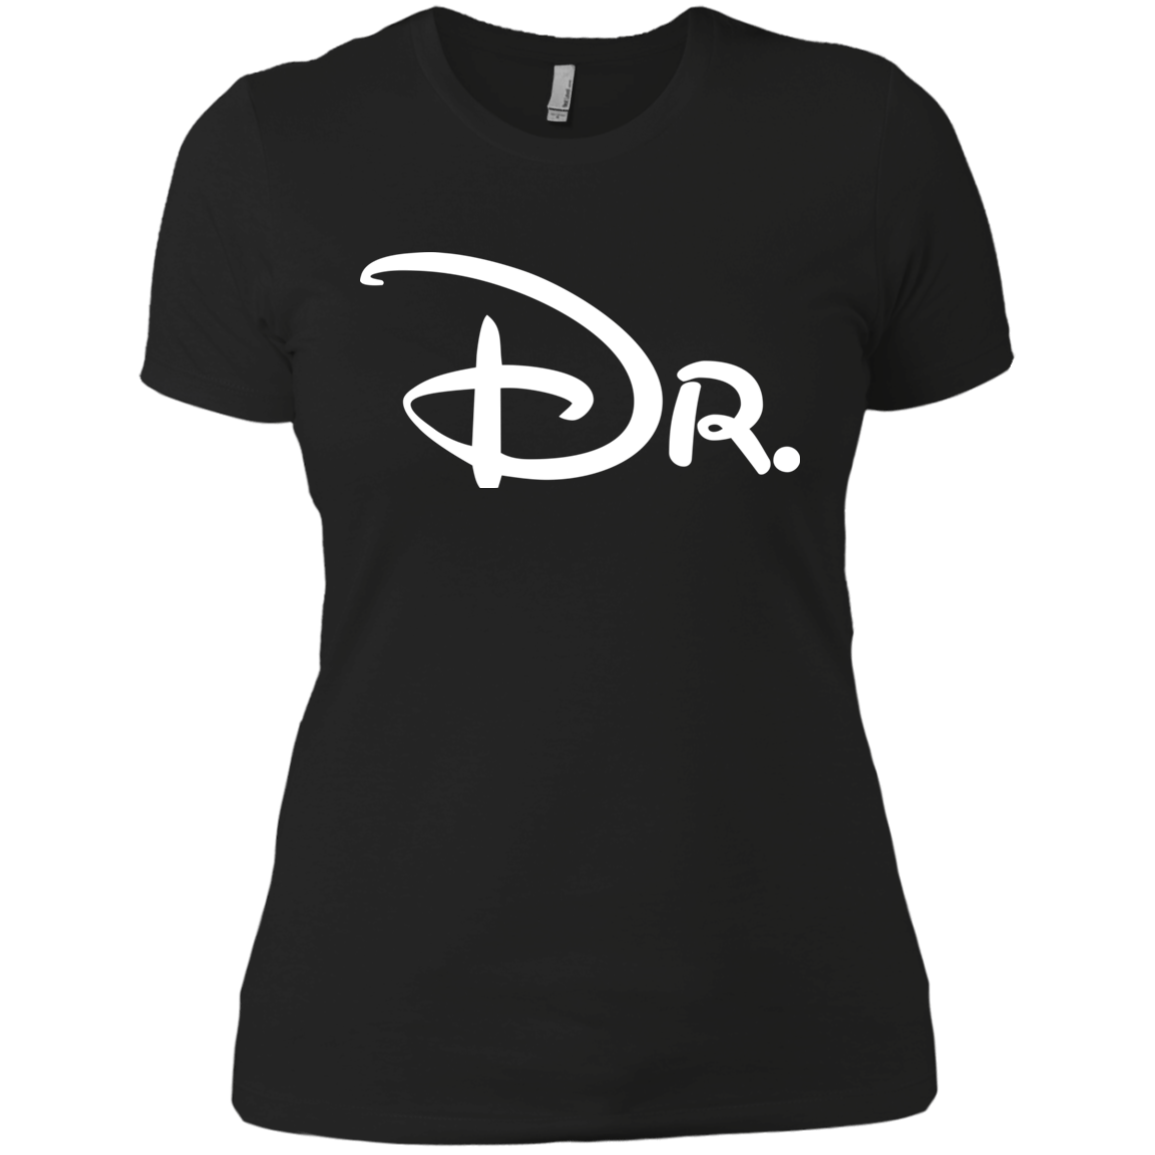 Dr. Ladies' Boyfriend T-Shirt